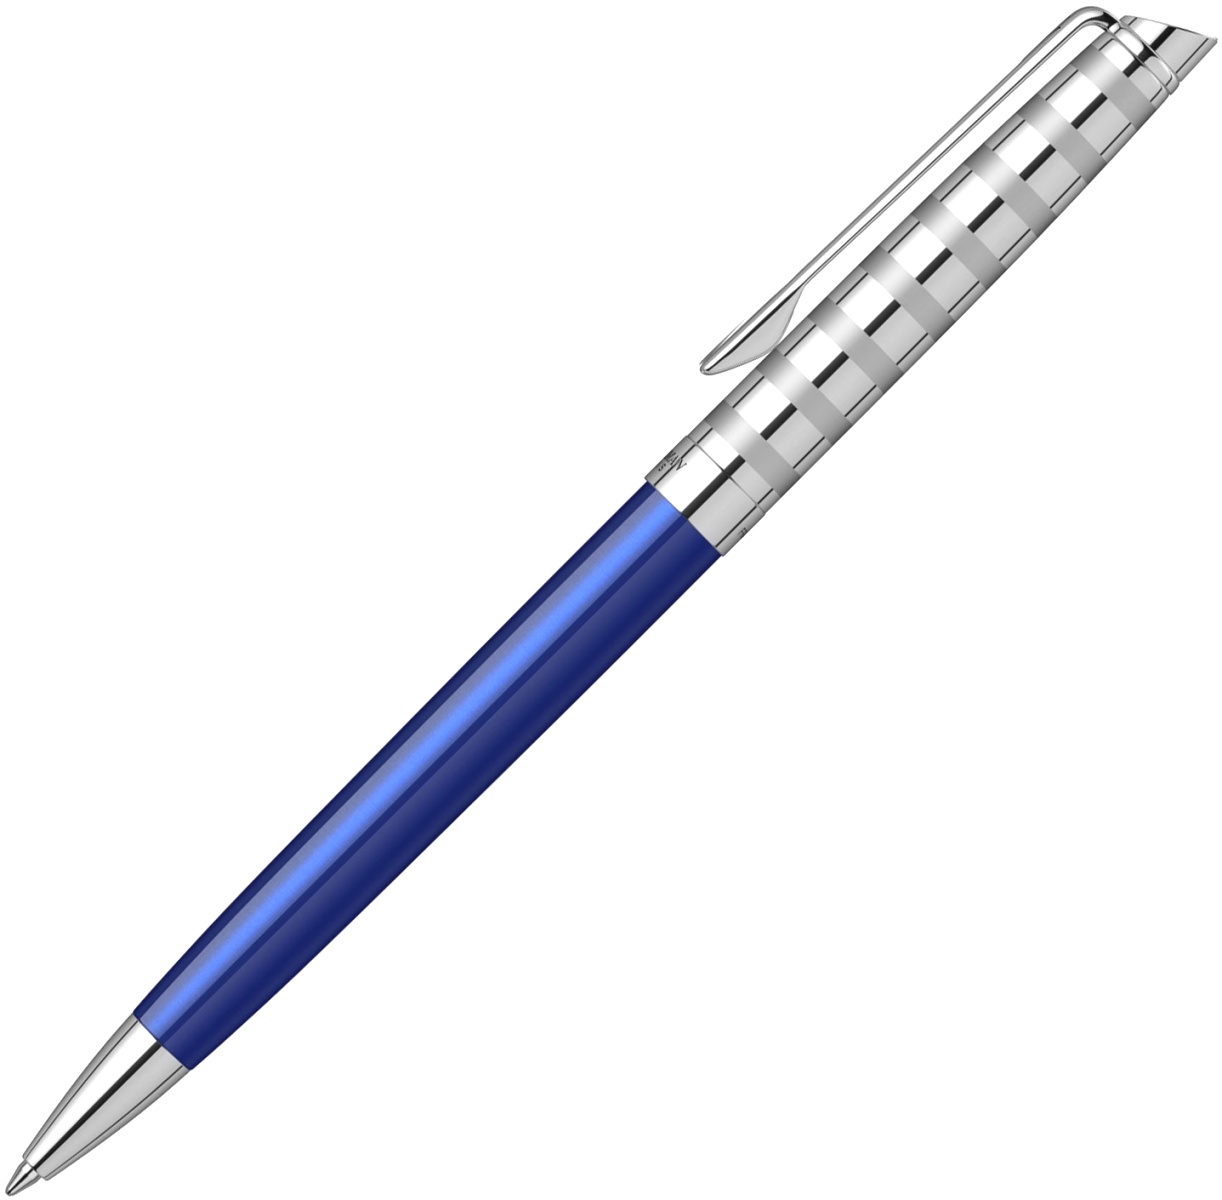  Шариковая ручка Waterman Hemisphere Deluxe 2020, Marine Blue CT, фото 2